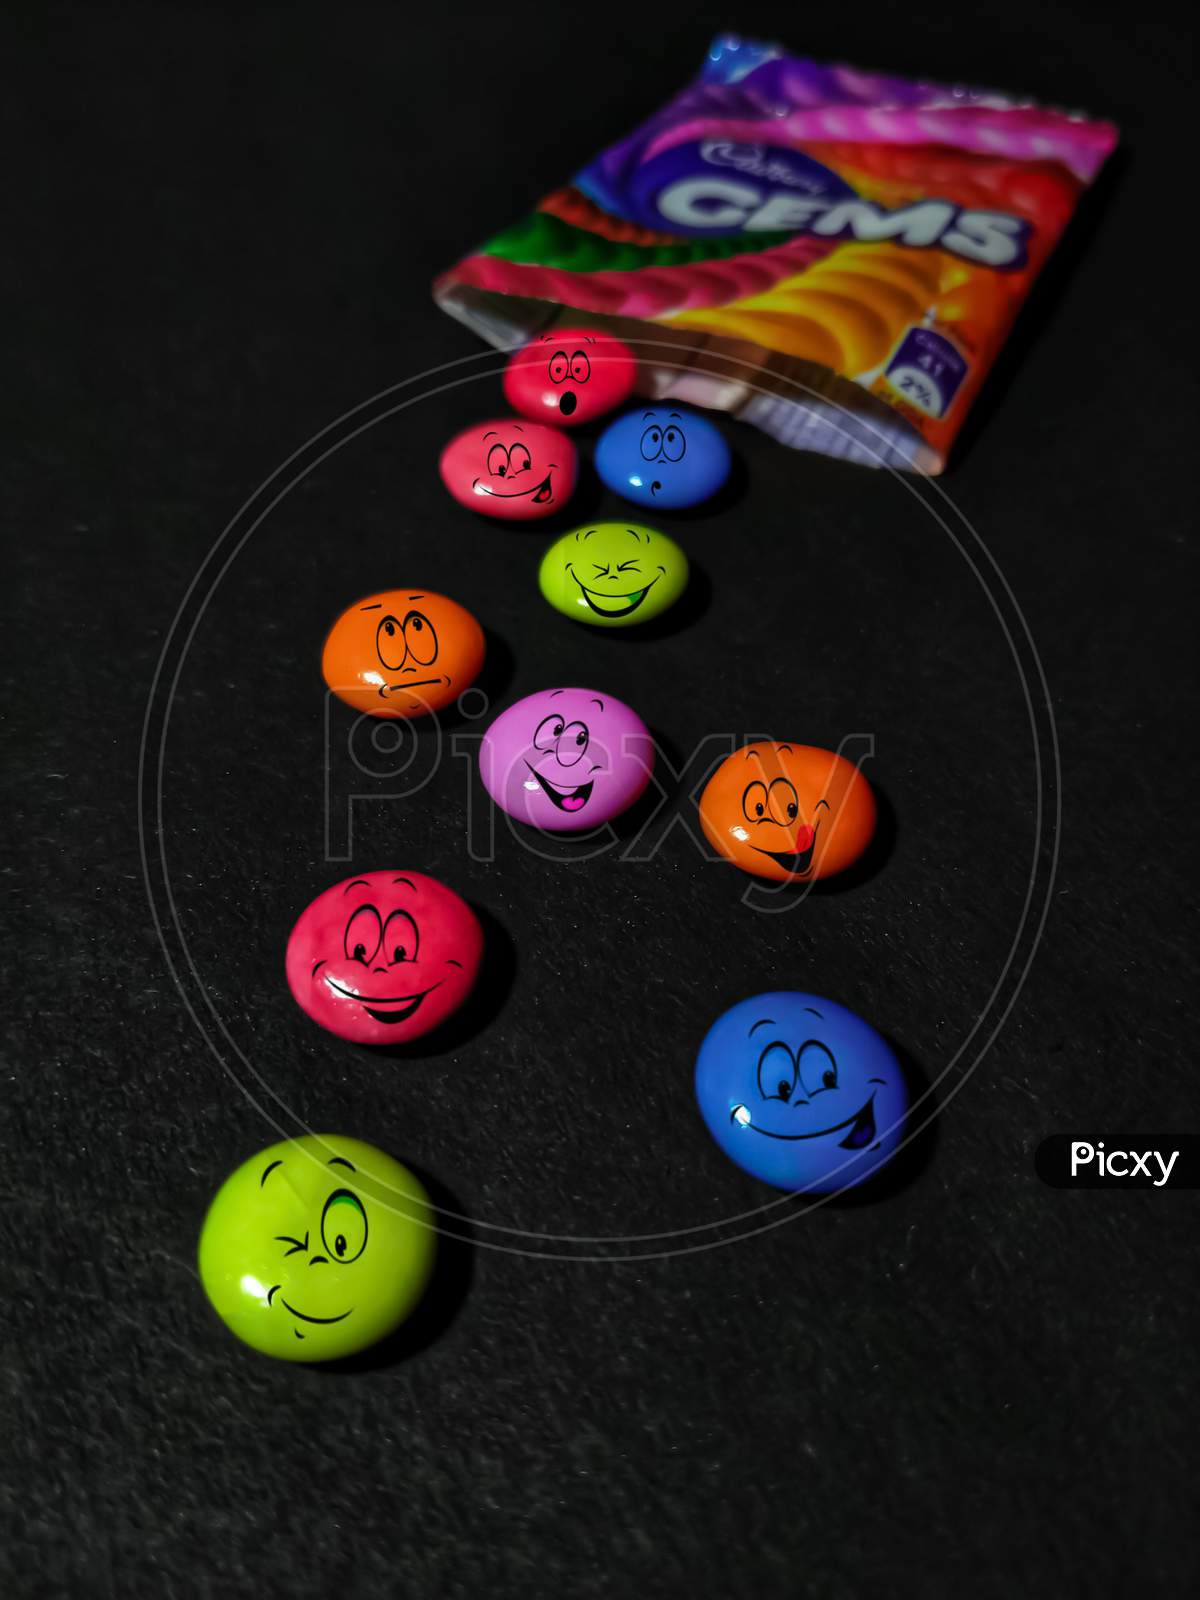 Cadbury Gems With Emojis